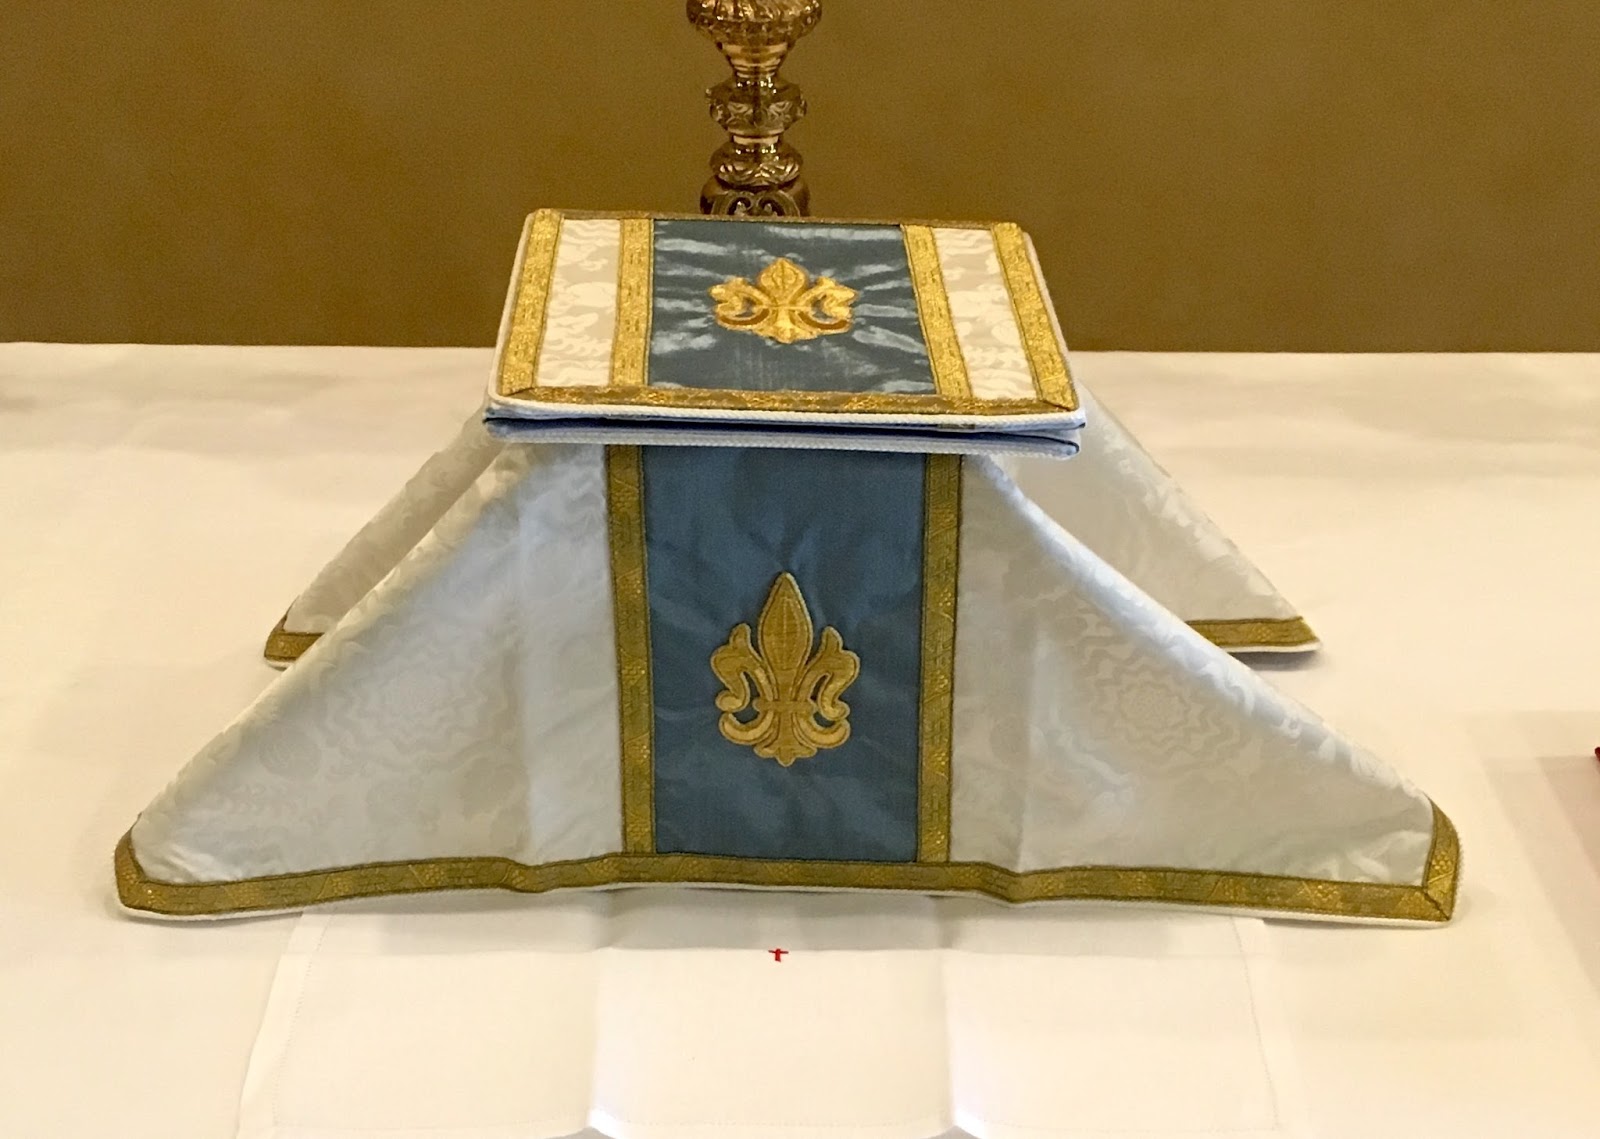 The chalice veil and burse on the altar